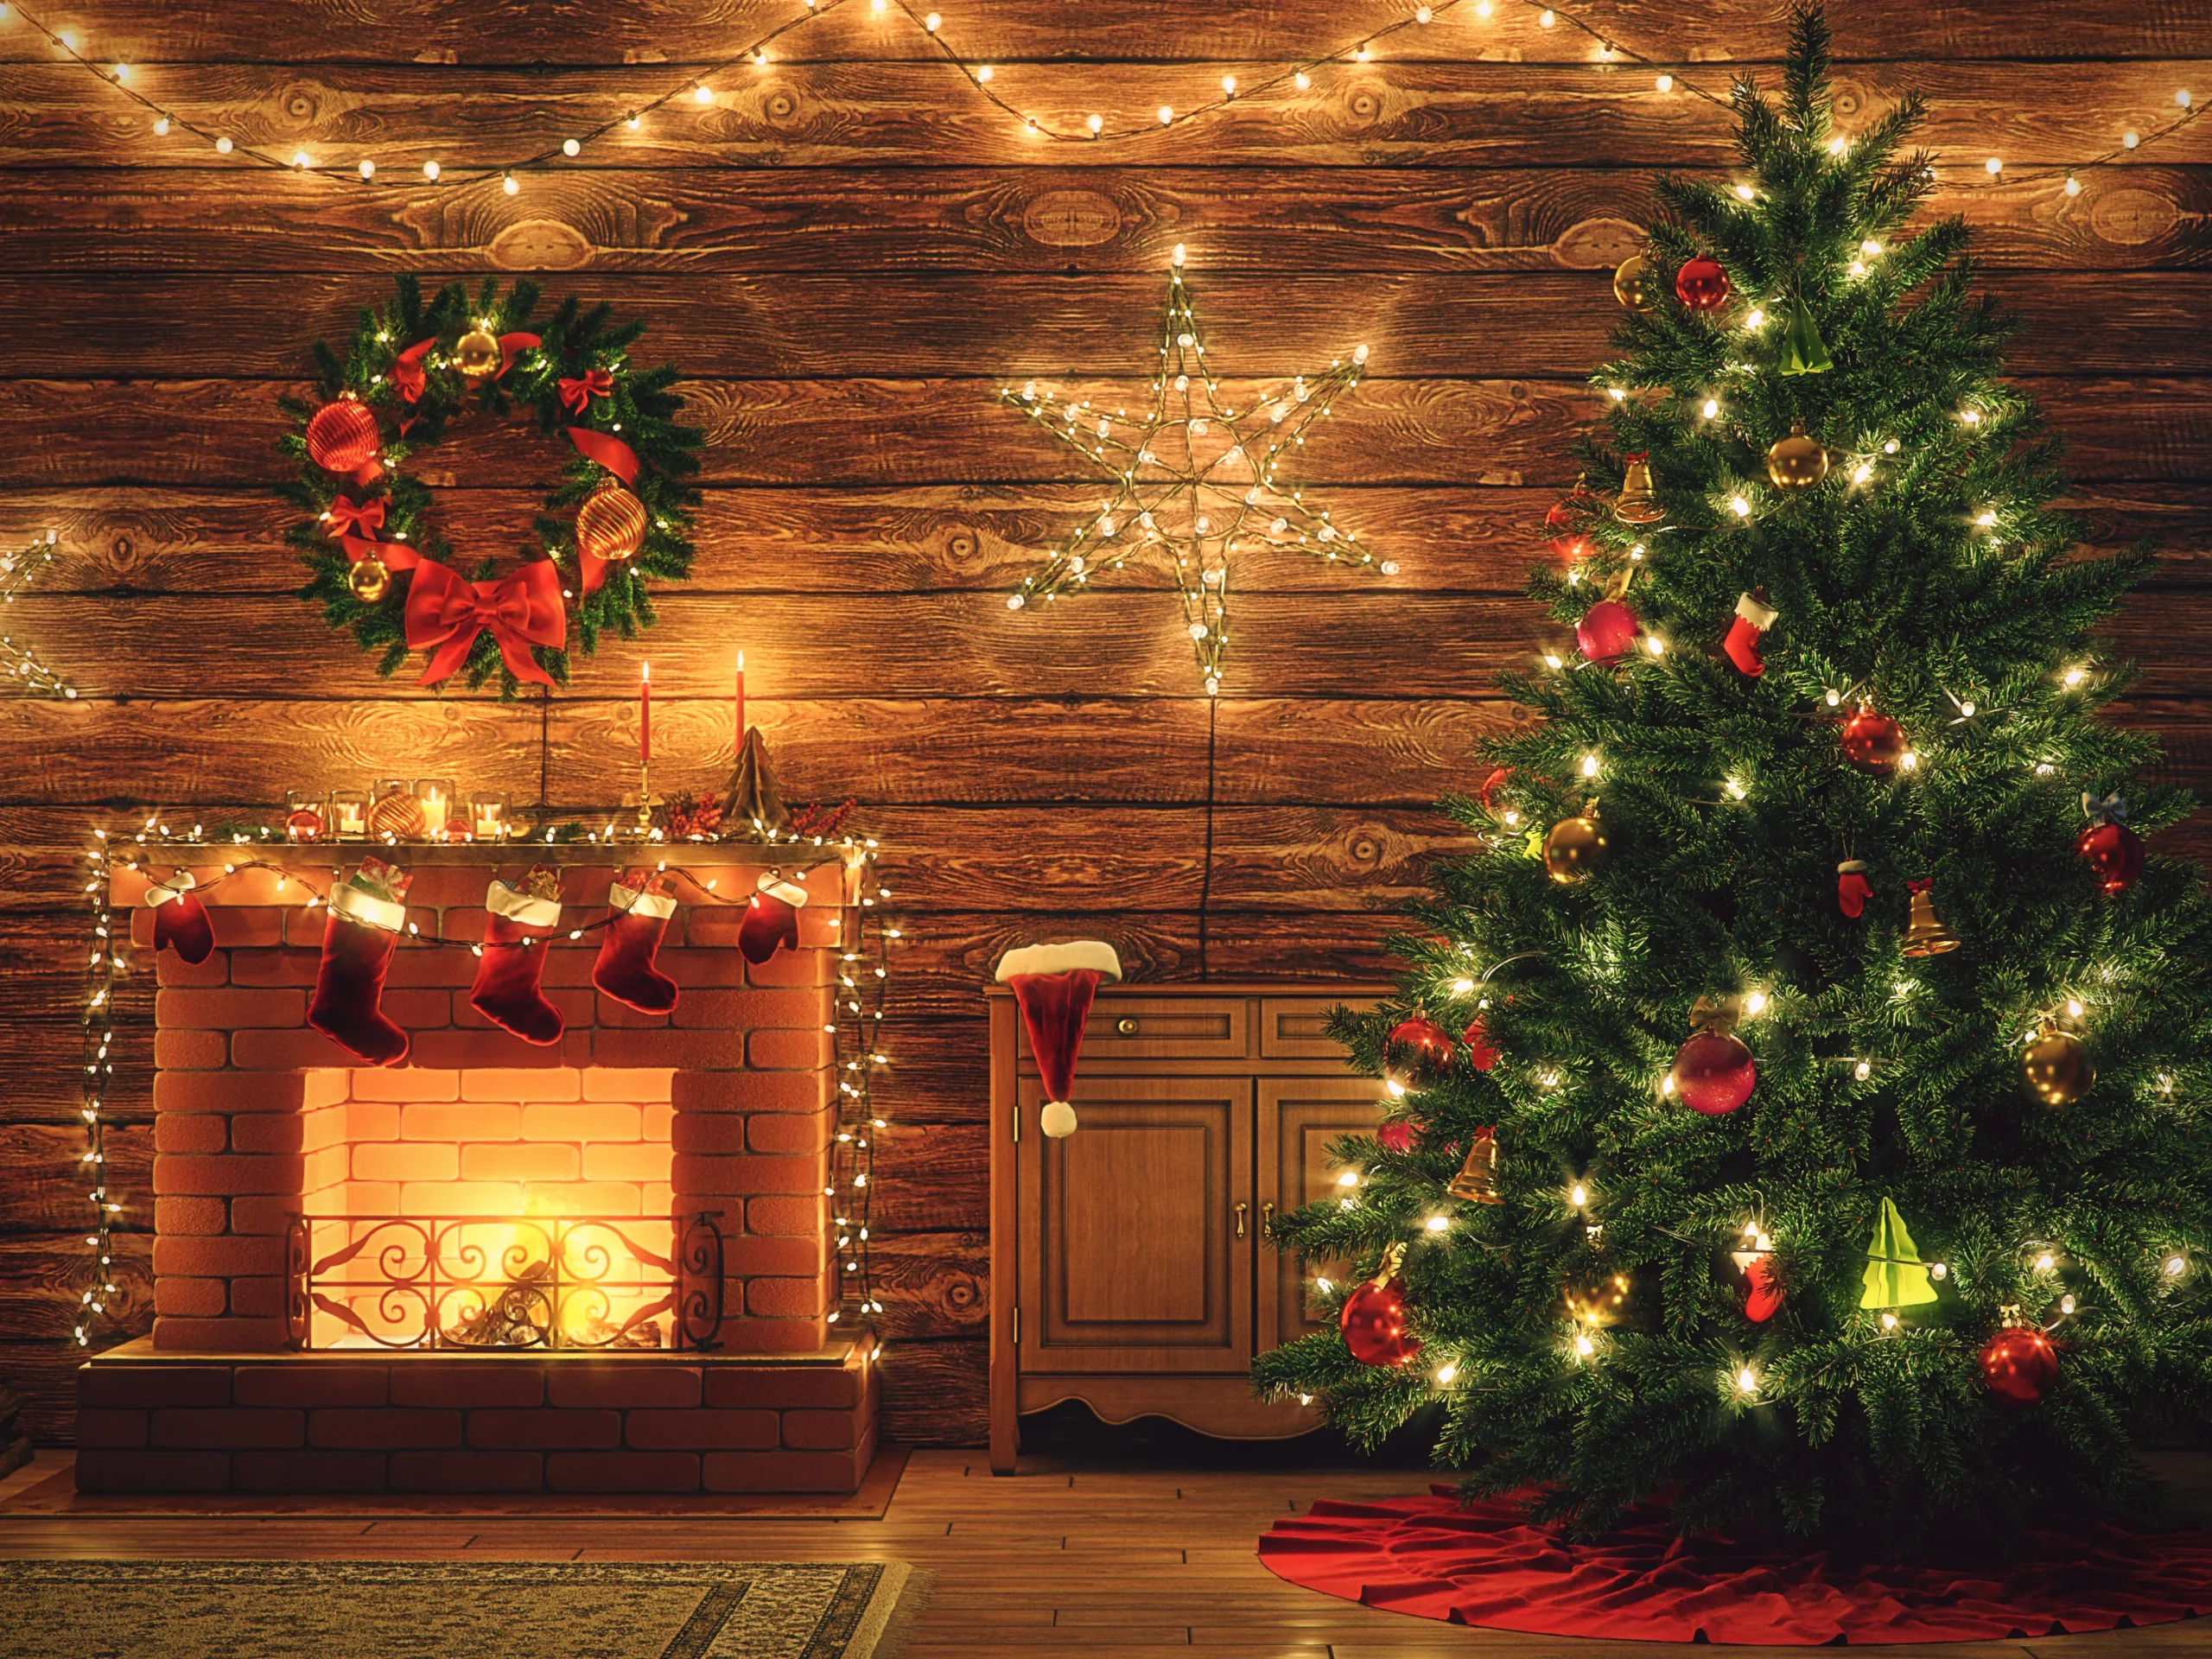 聖誕樹 | 聖誕樹真樹 | 真聖誕樹-FAQ